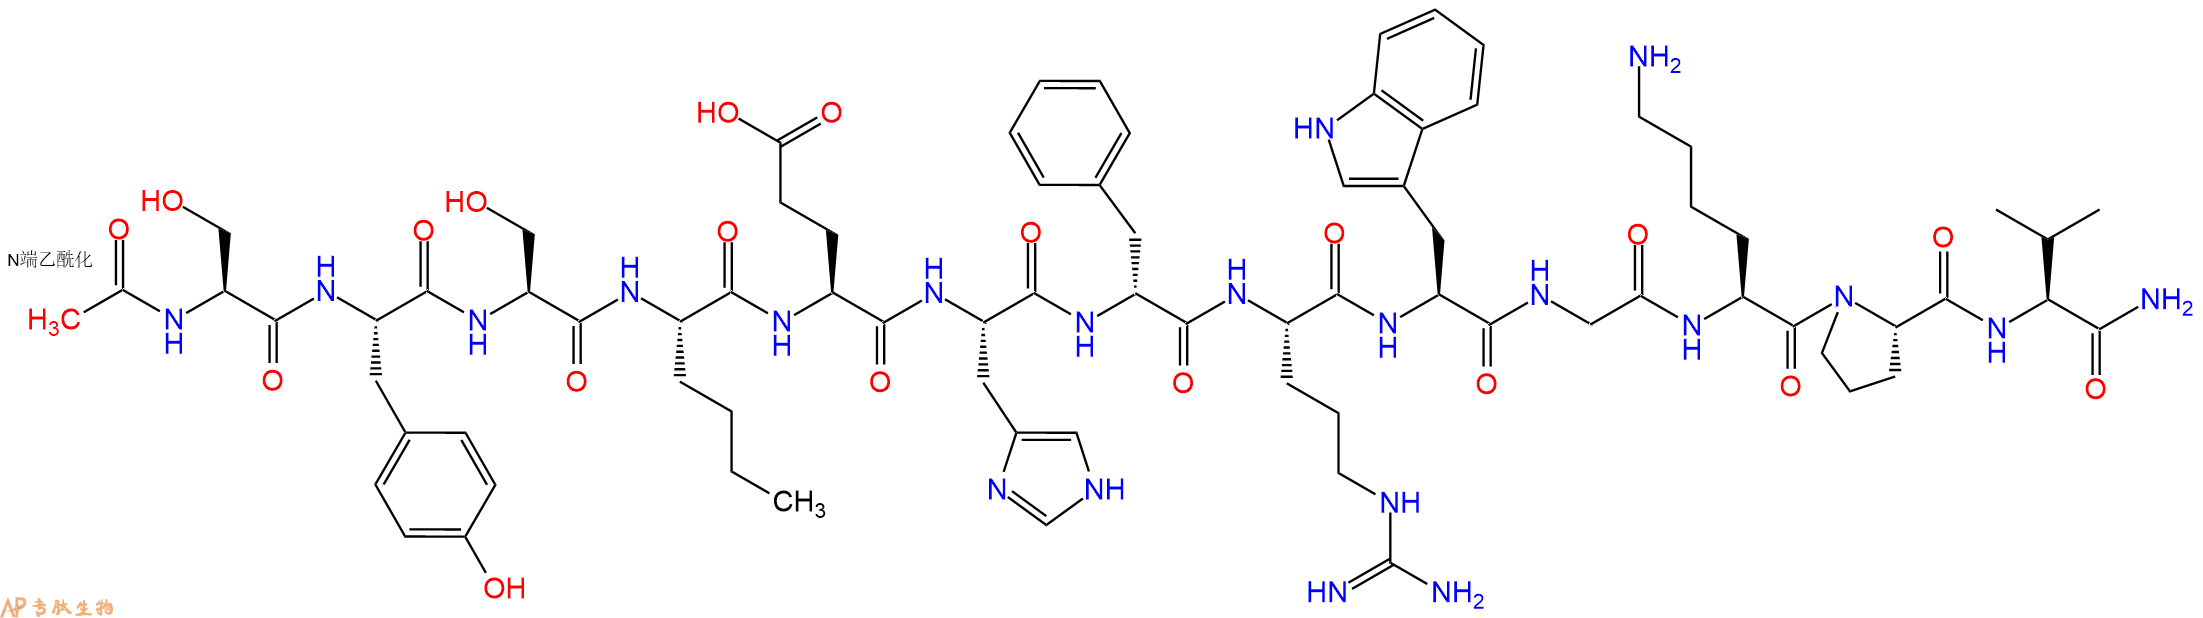 专肽生物产品美拉诺坦 I、Melanotan I75921-69-6